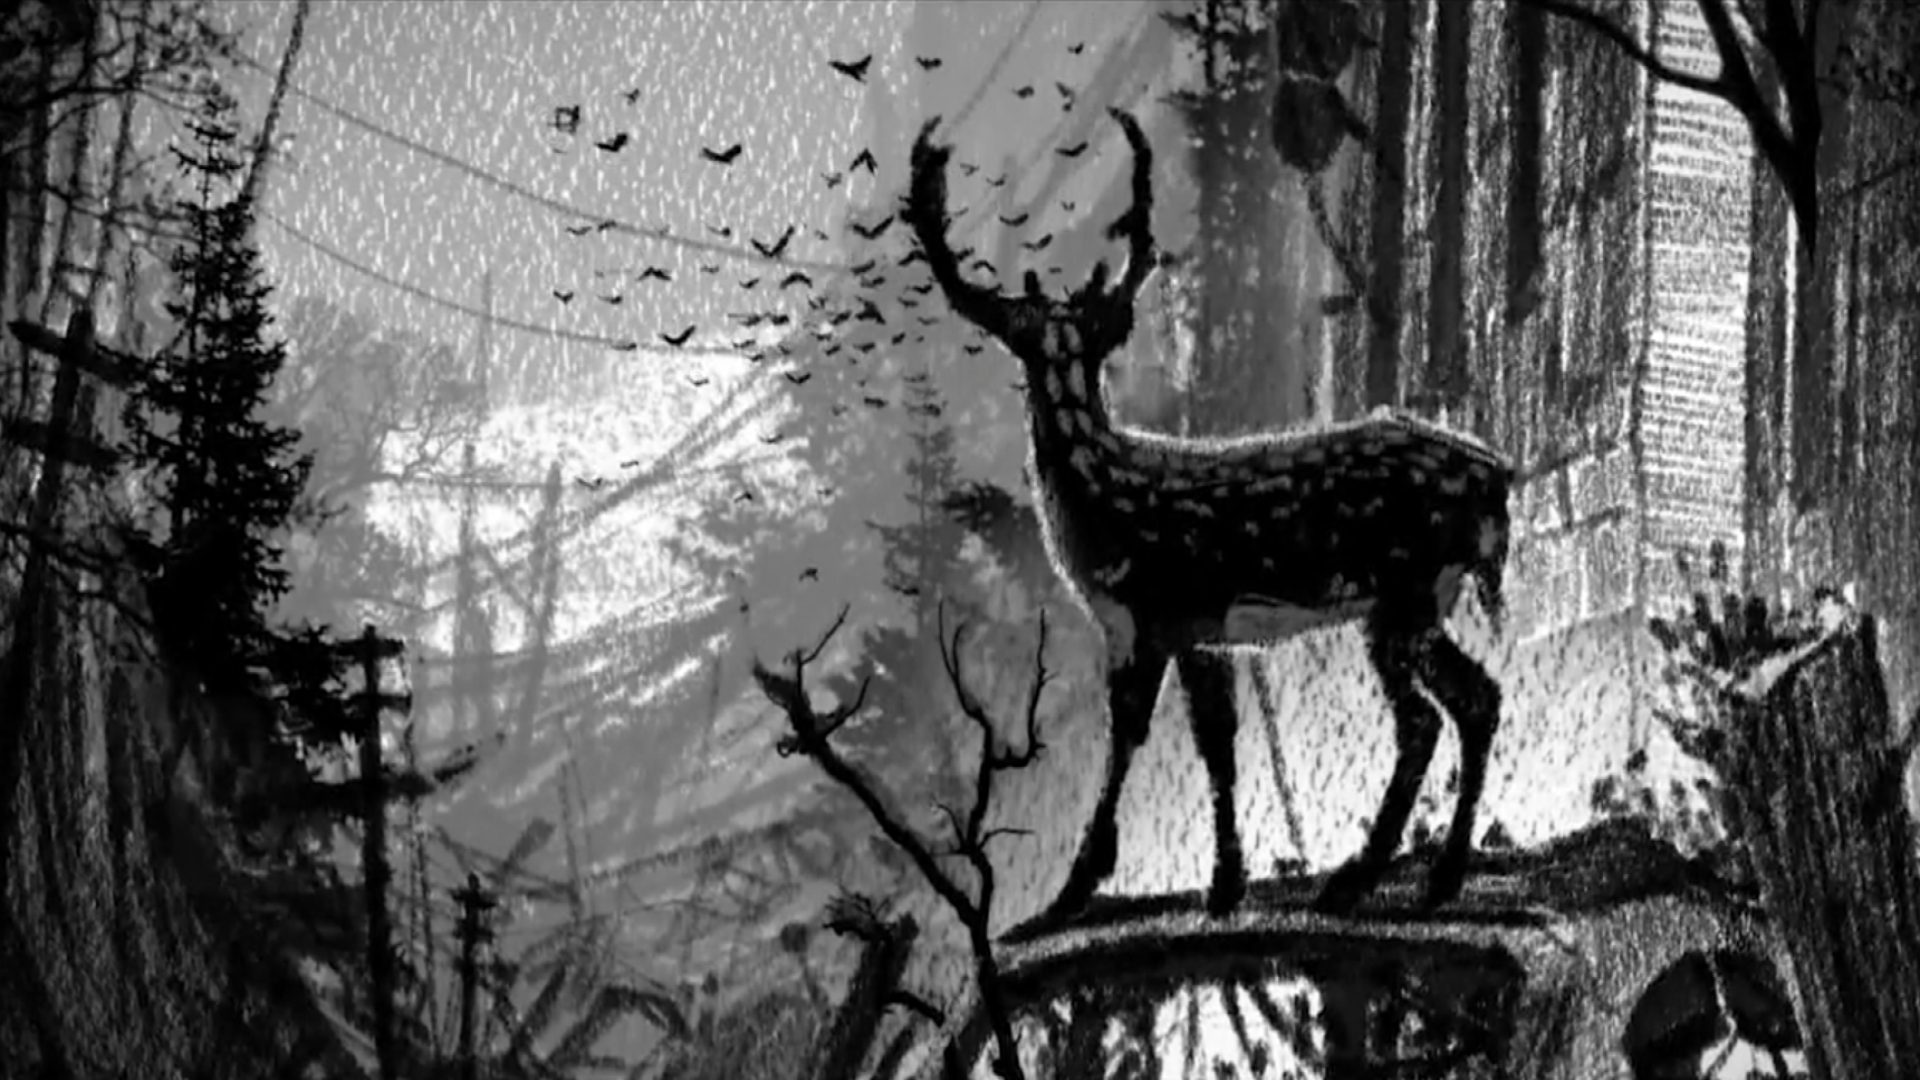 alba-artwork-deer.png